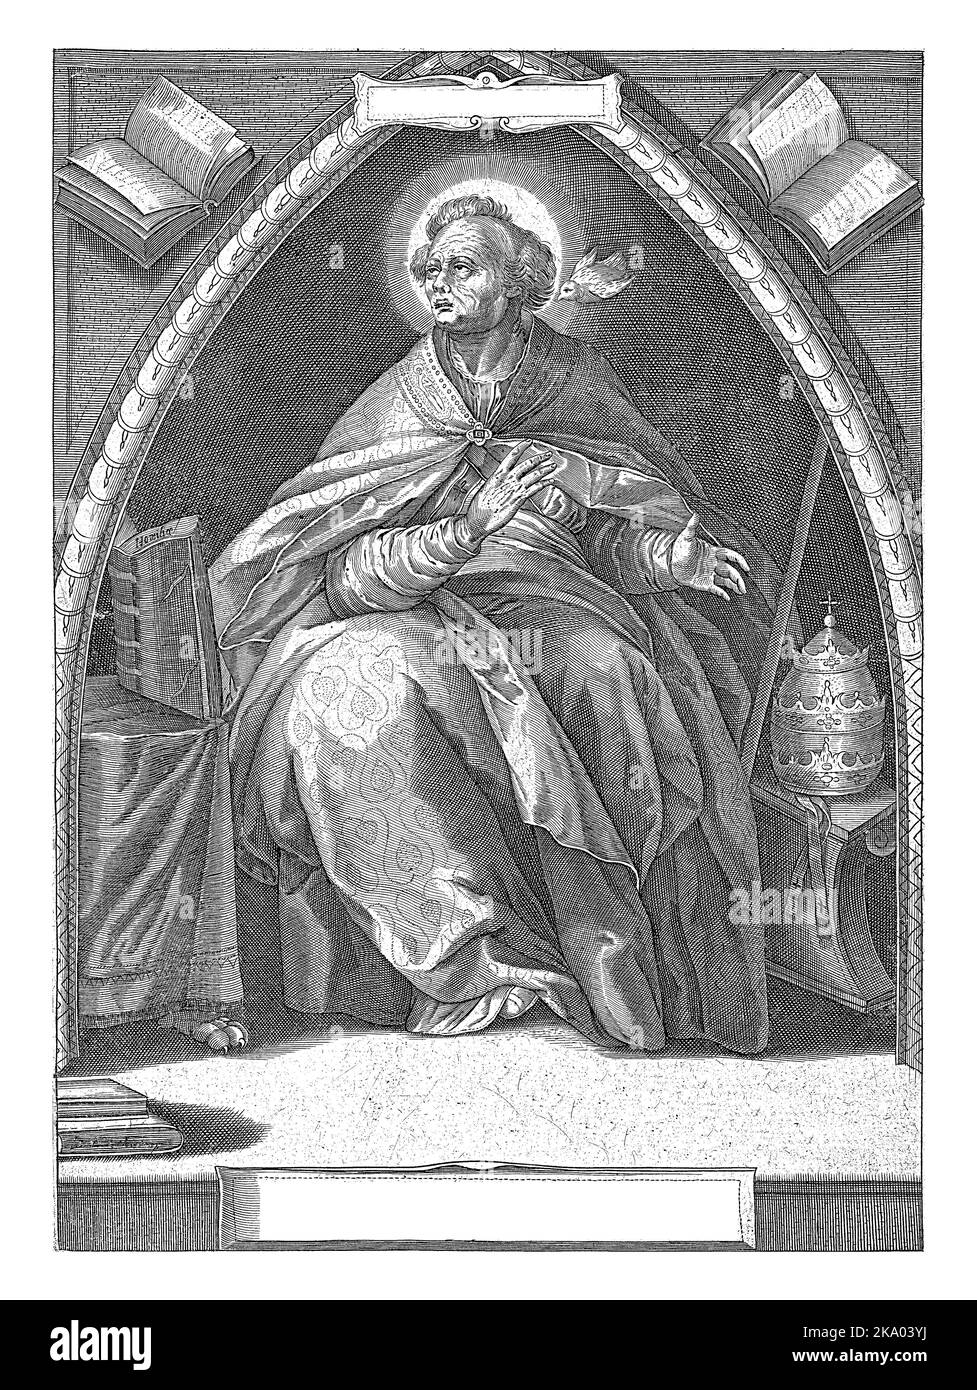 Der heilige Papst Gregor I. saß in einem Kirchengewölbe. Er trägt die päpstlichen Roben und seine päpstliche Tiara liegt neben ihm auf einer Bank. Eine Taube, das persönliche Attribut Stockfoto